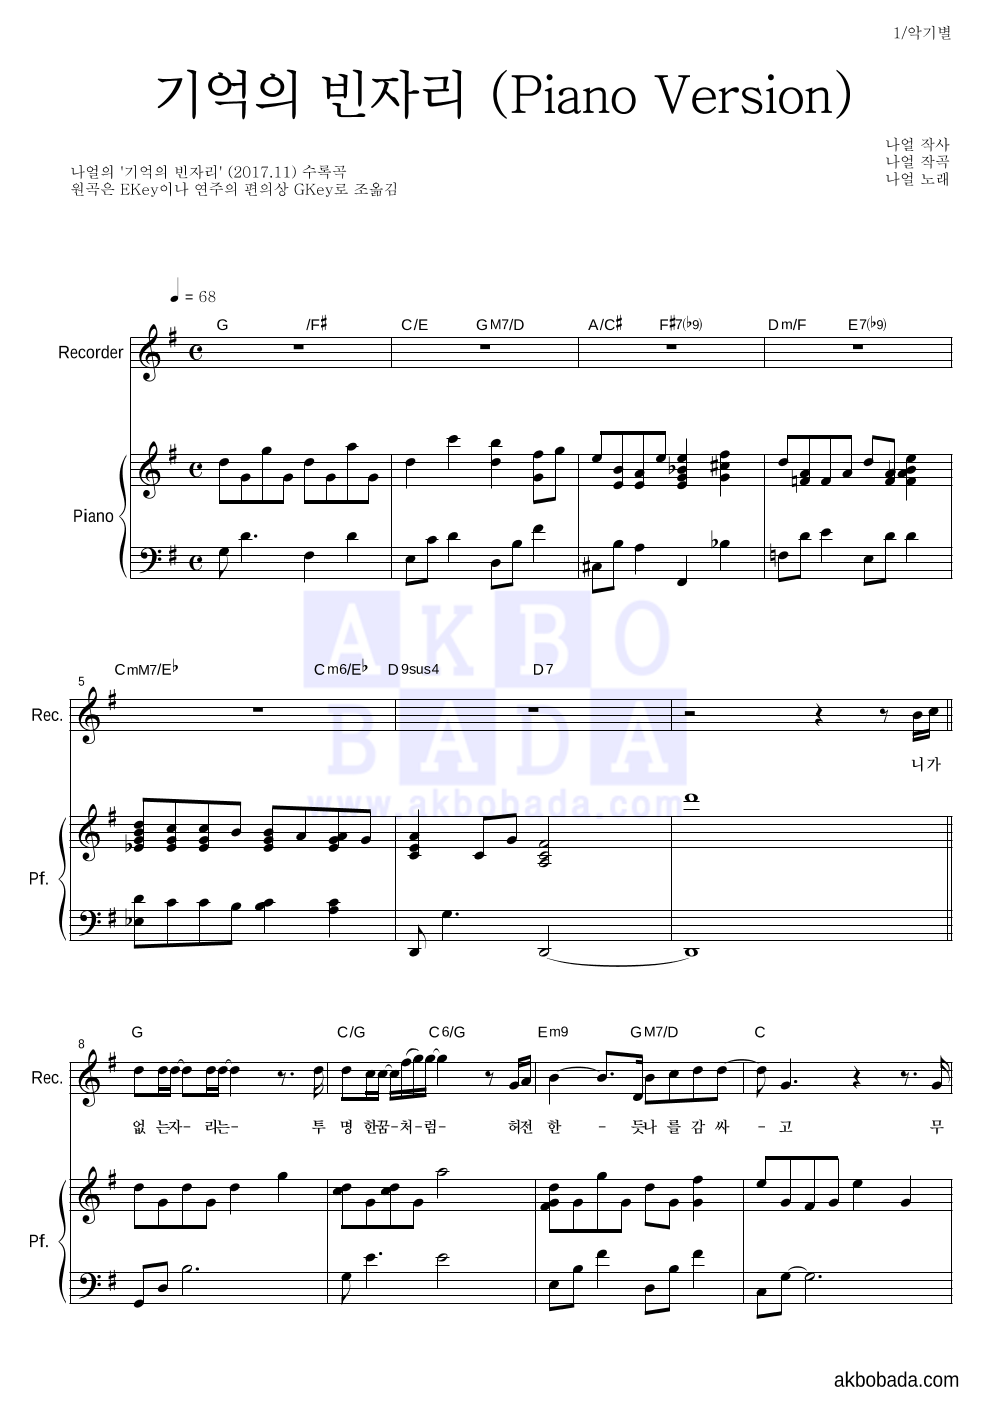 나얼 - 기억의 빈자리 (Piano Version) 리코더&피아노 악보 